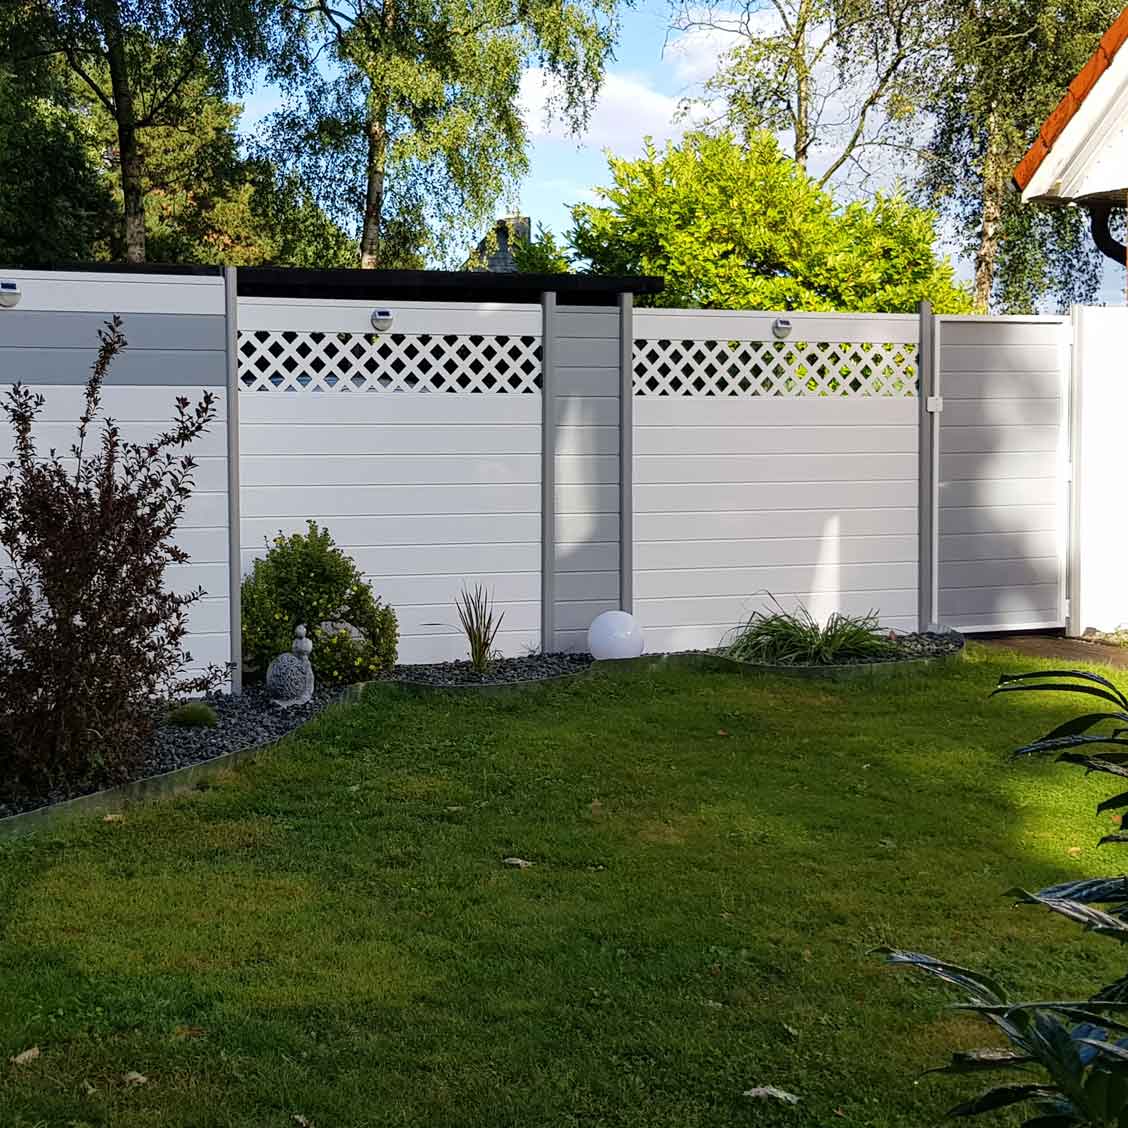 Sichtschutzzaun aus Kunststoff PVC in Weiß und Grau als Einzäunung für den Garten